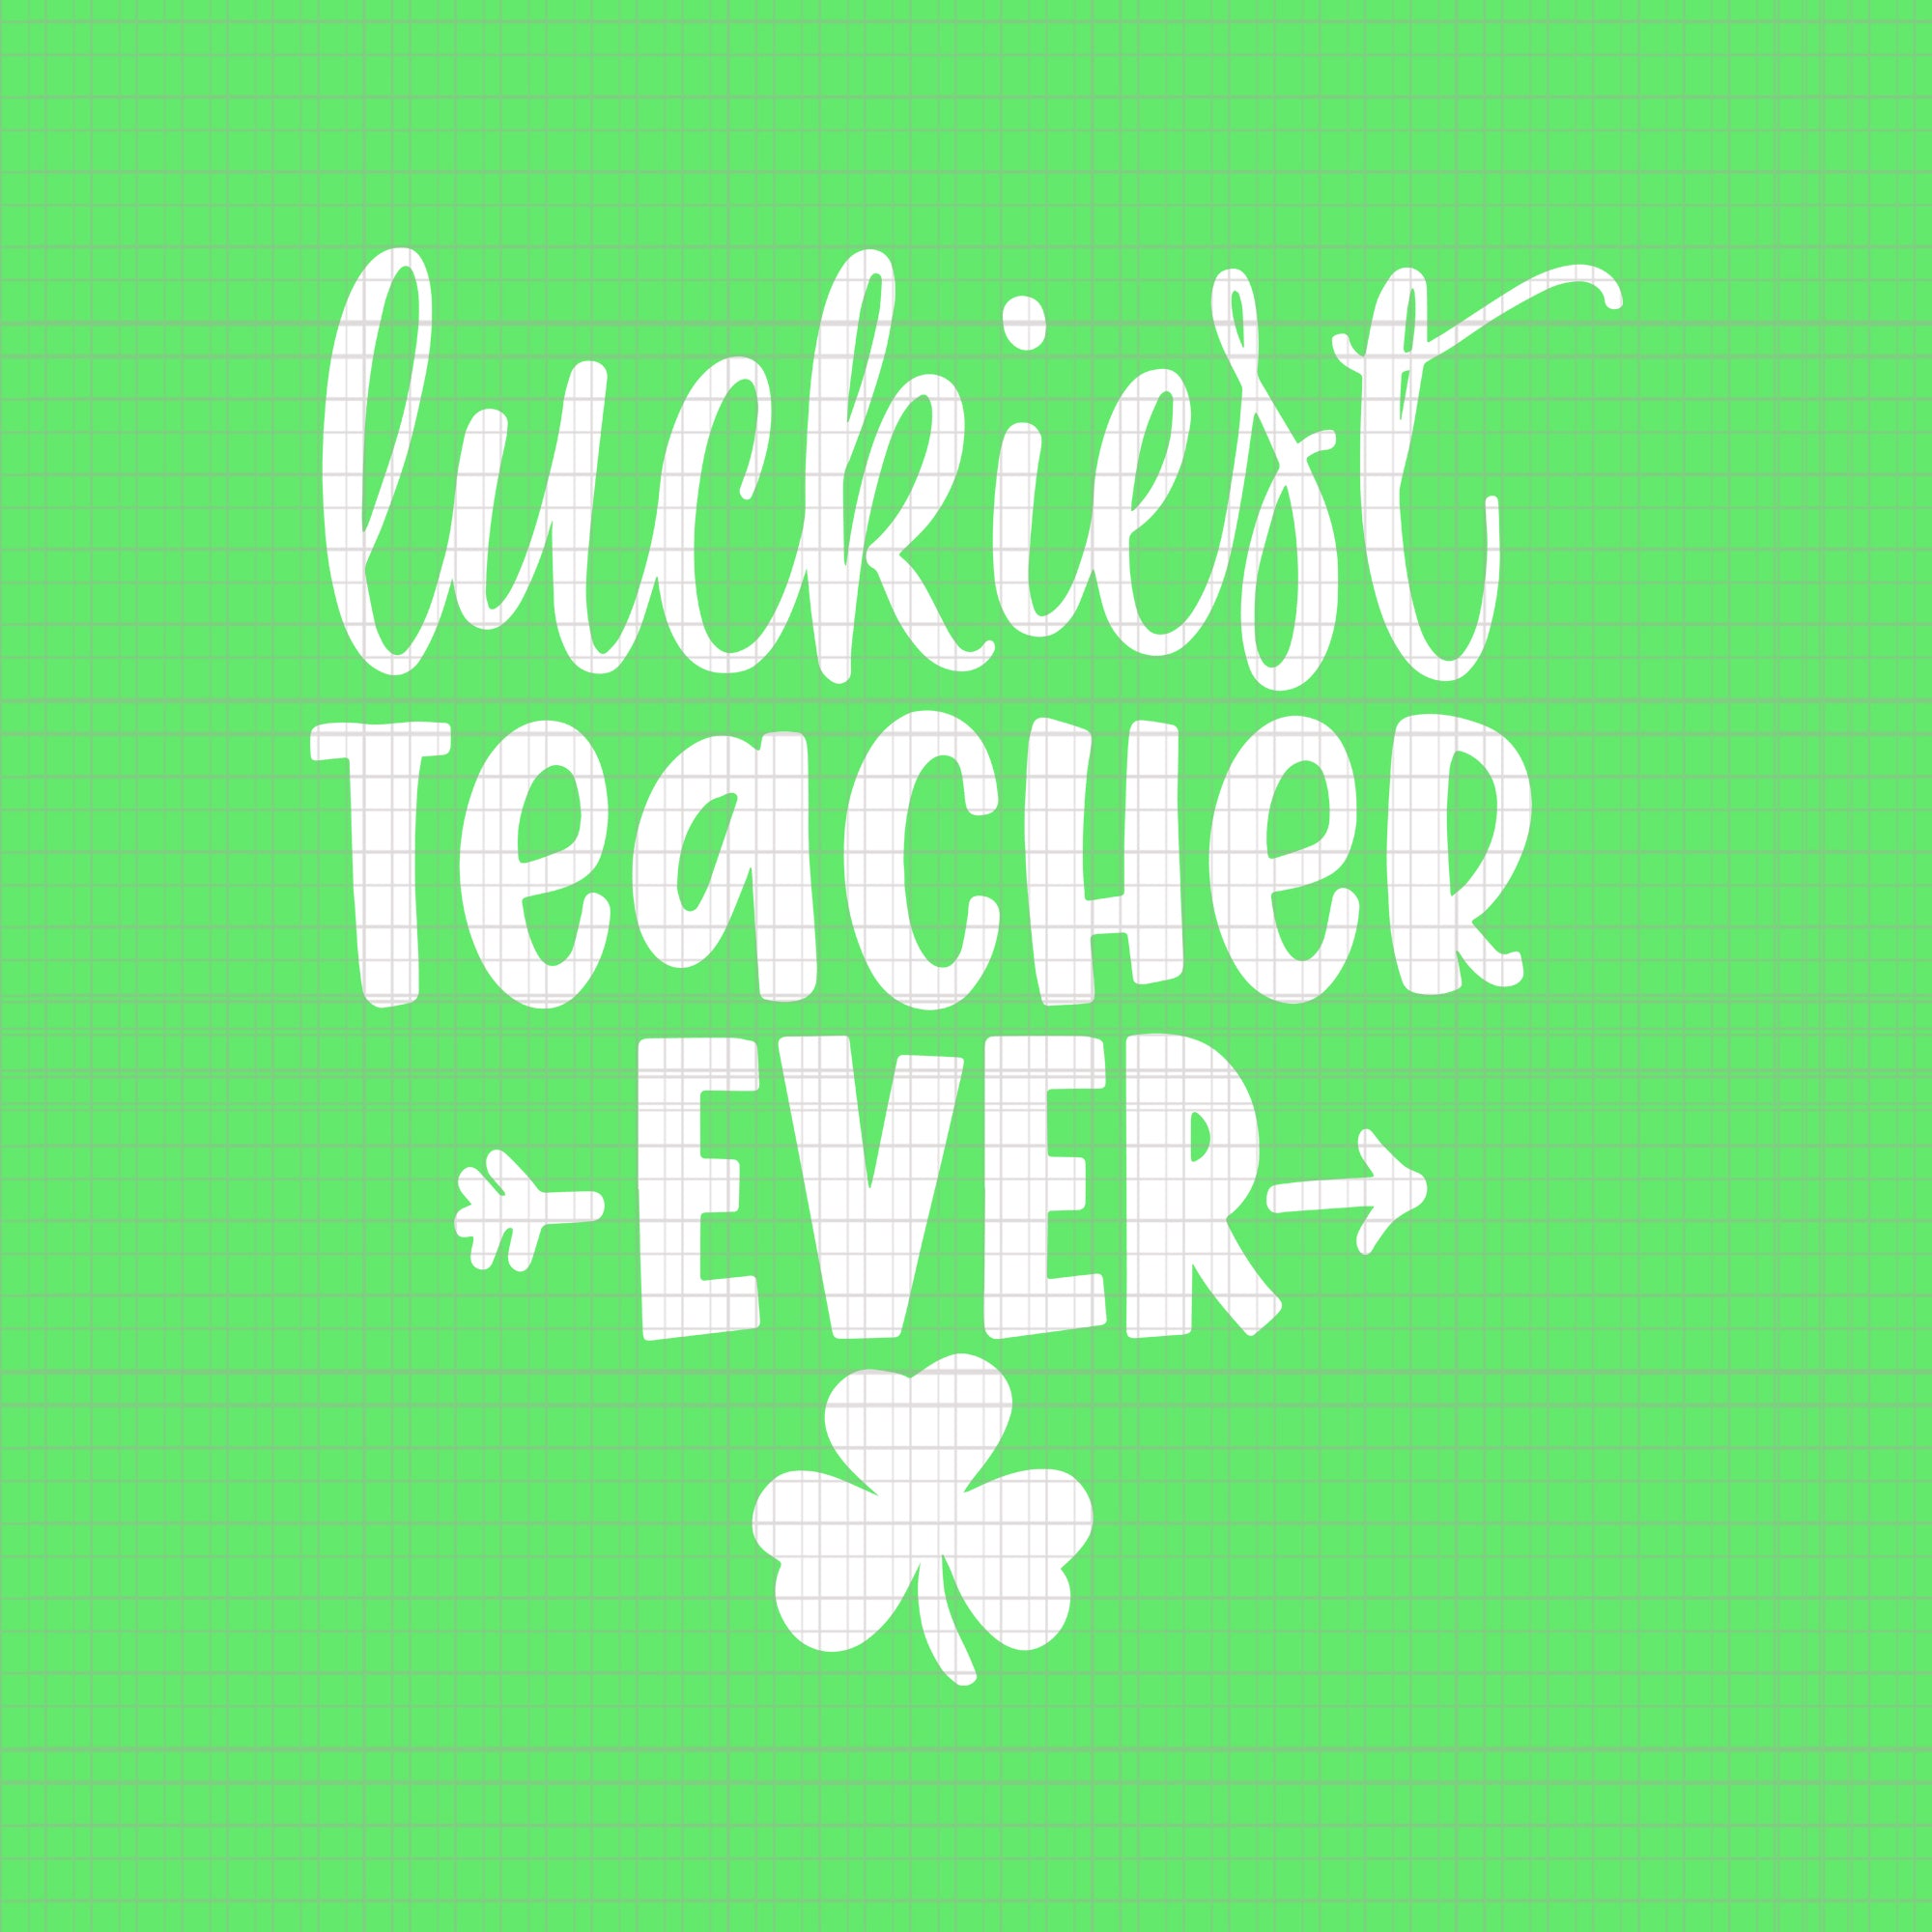 Luckiest Teacher Ever svg, Luckiest Teacher Ever, Patrick Day svg, Patrick Day vector, Luckiest Teacher Ever